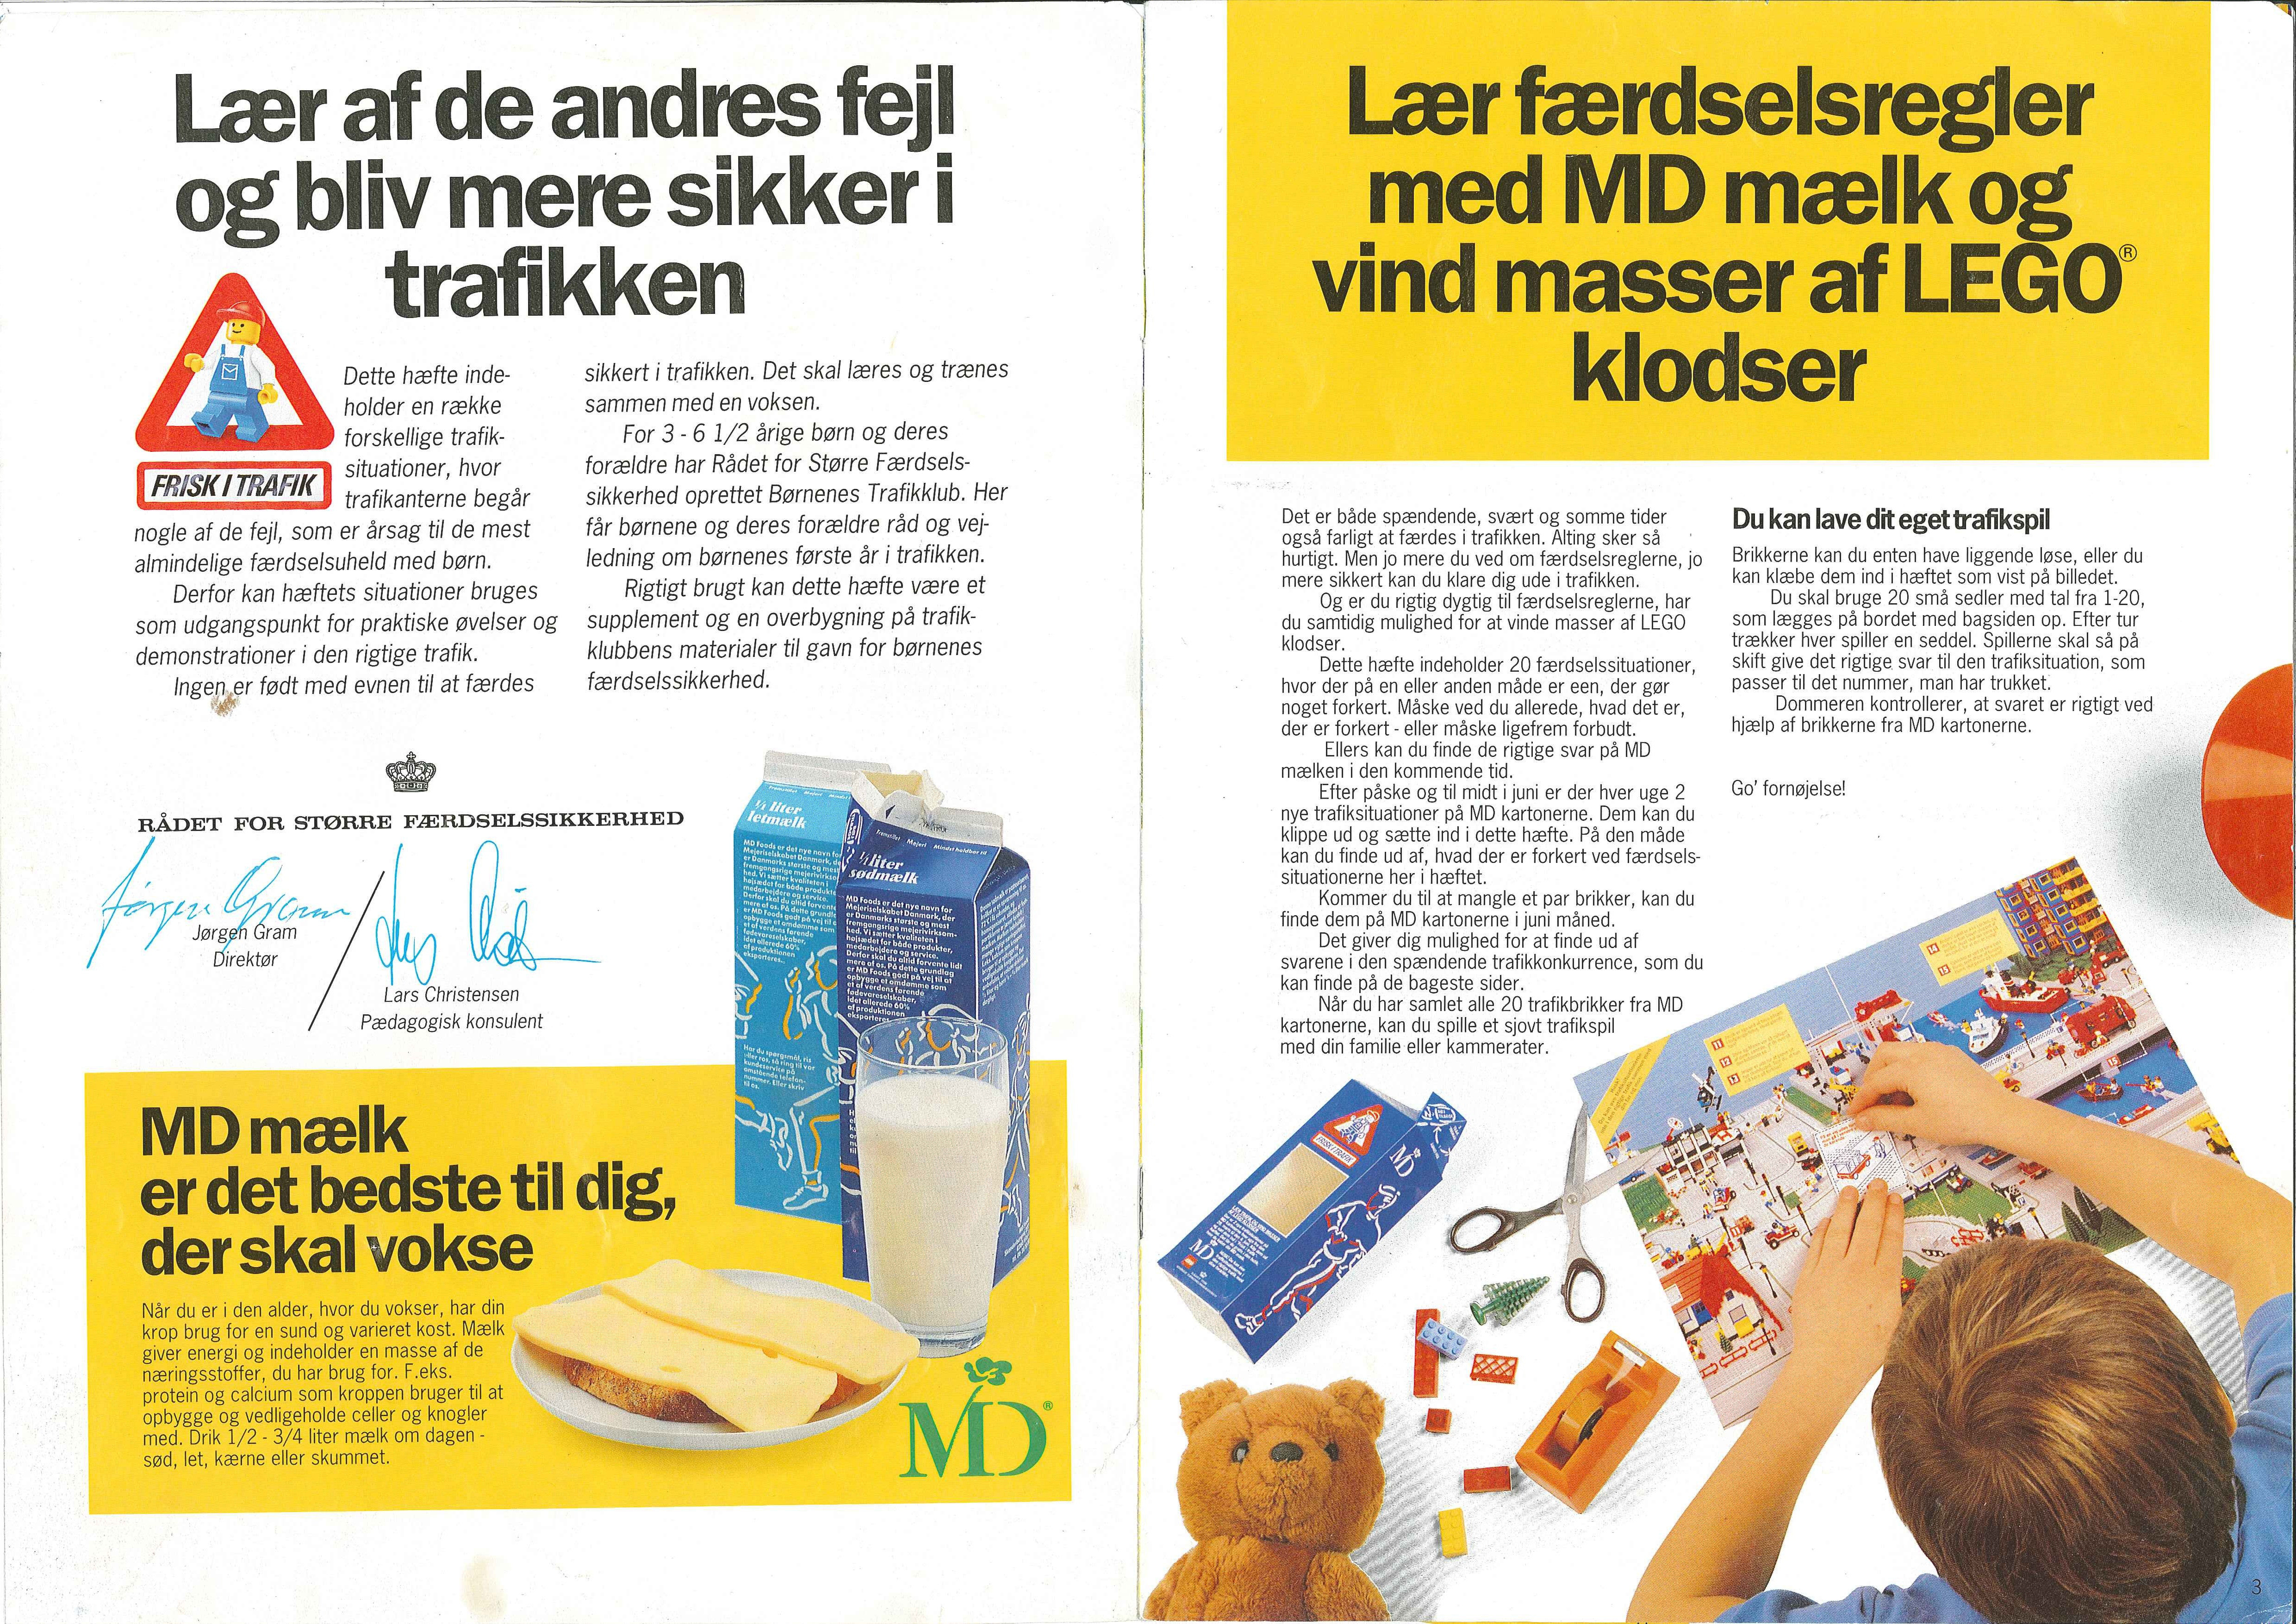 lego_md_foods_1989_-_frisk_i_trafik0203.jpg